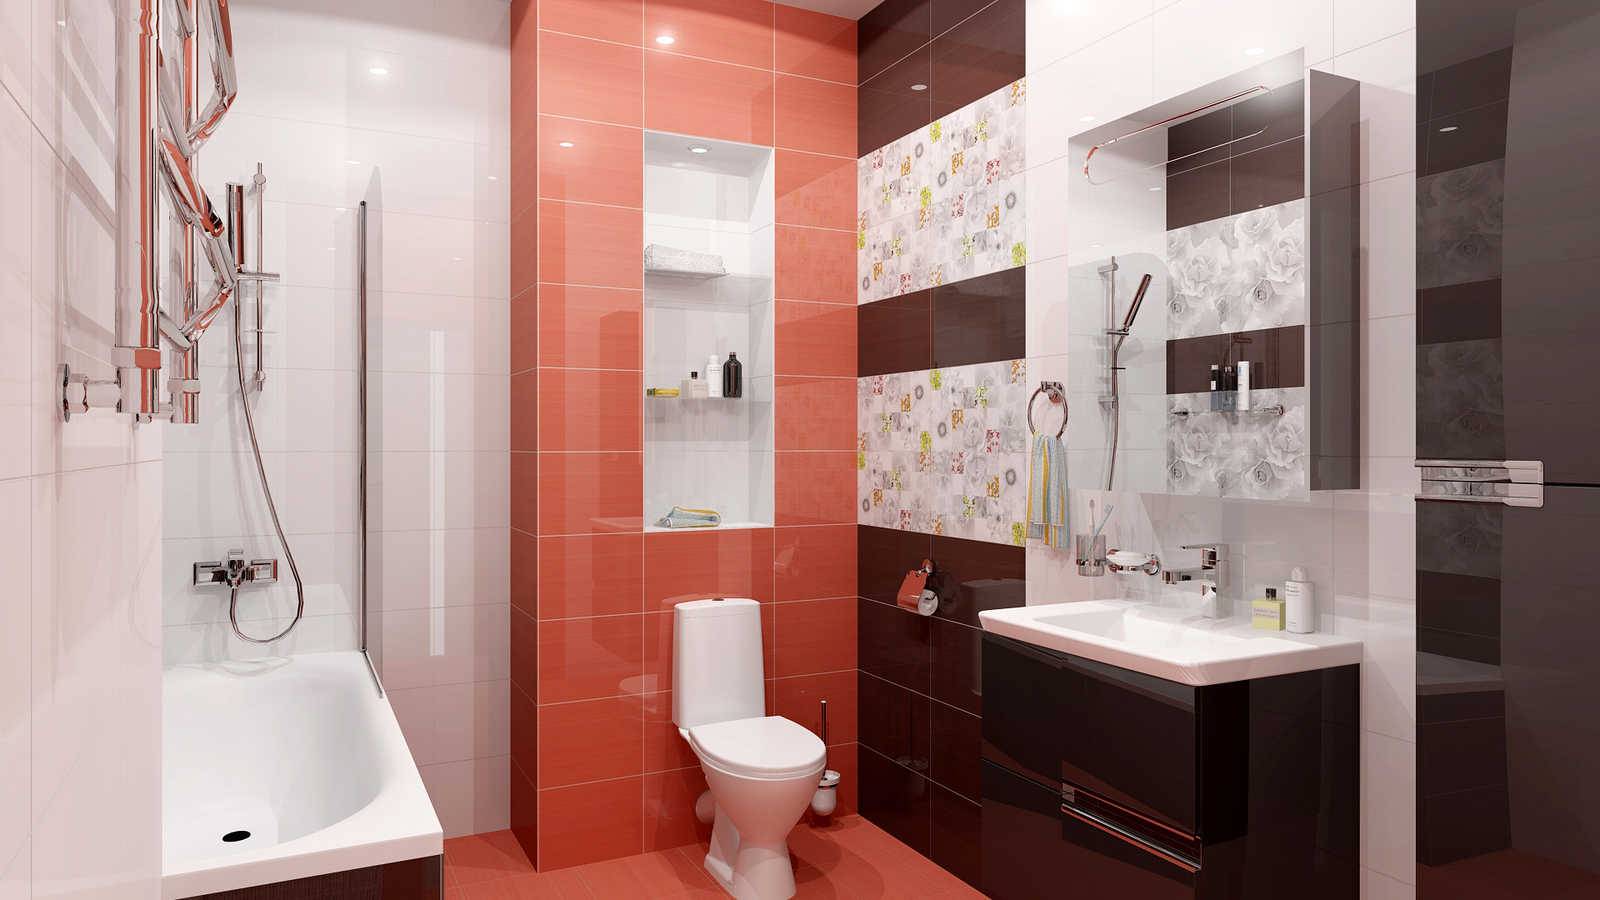 Фото отделки ванной комнаты плиткой: дизайн облицовки